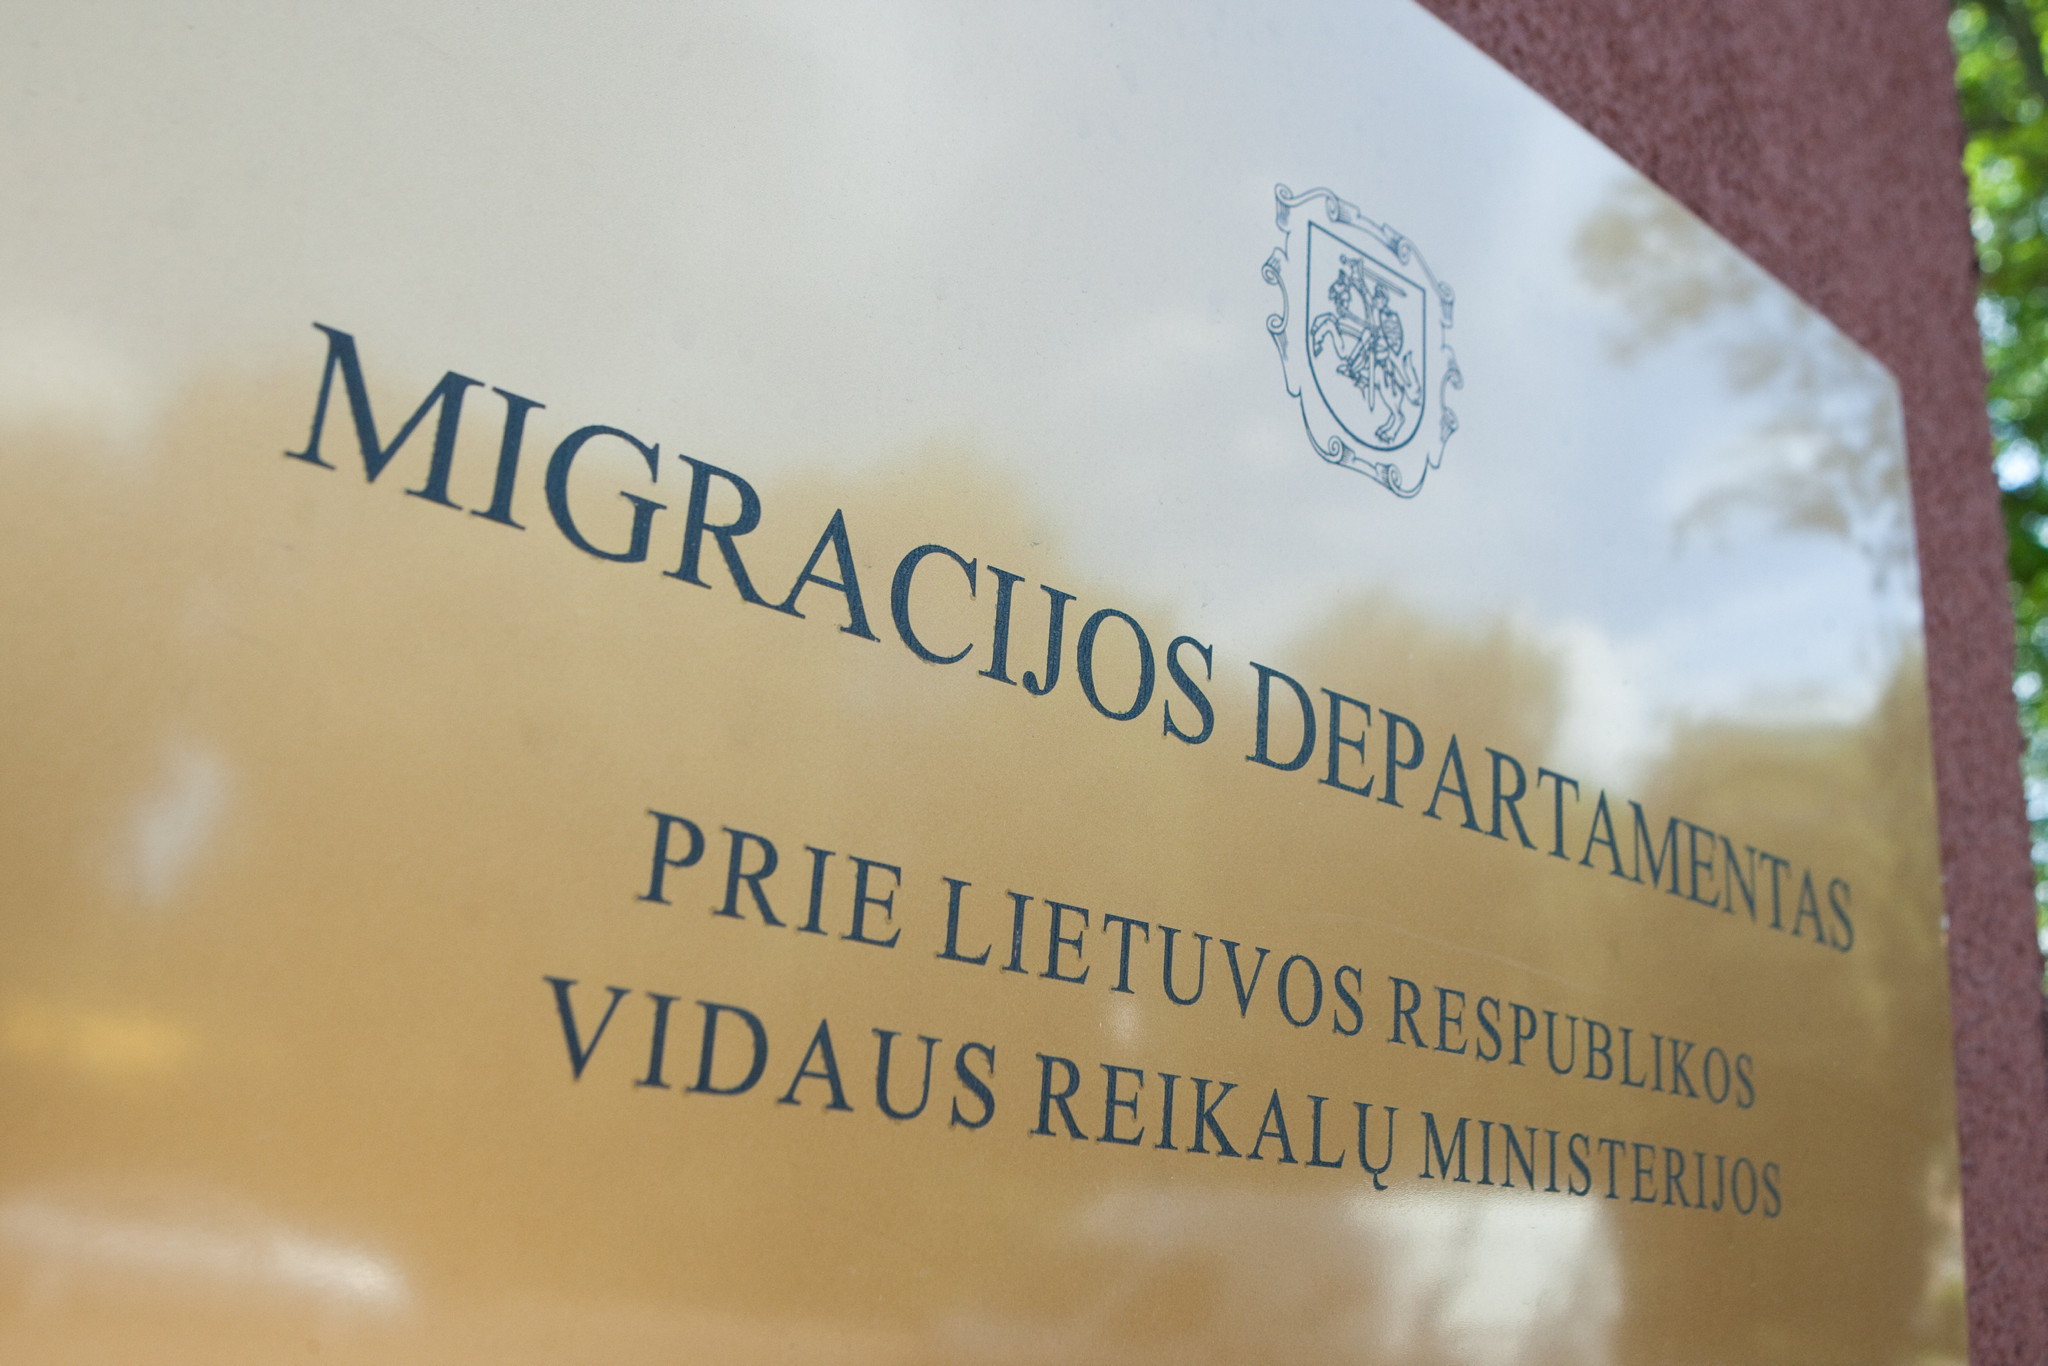 ВНЖ, ПМЖ и т.п. На вопросы беженцев отвечает Департамент миграции